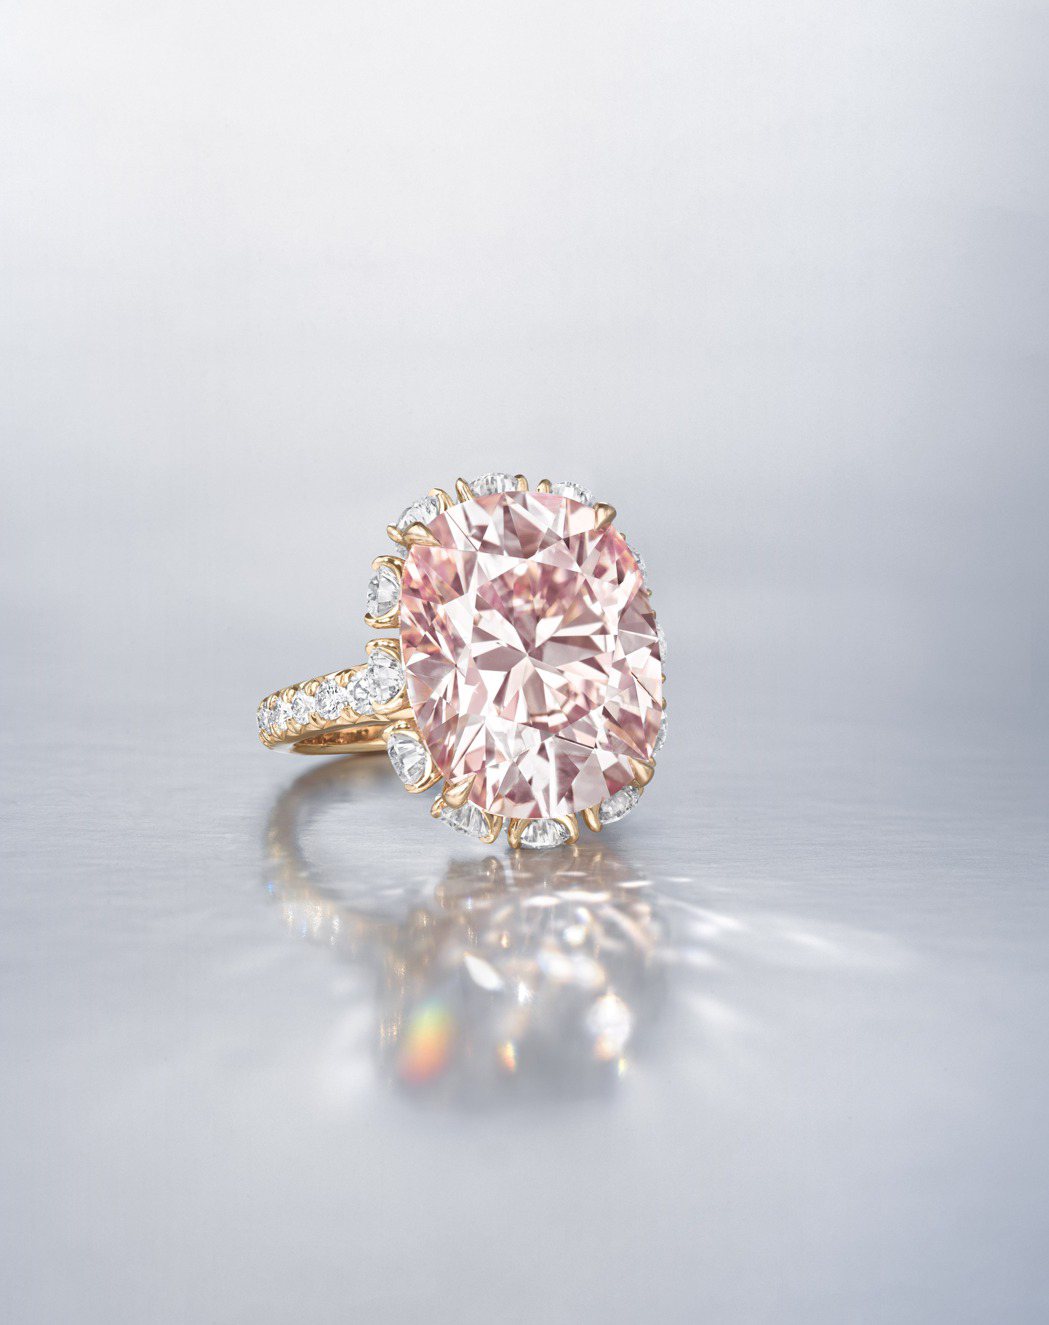 佳士得秋拍瑰麗珠寶領拍珍品為拍賣史上最碩大內部無瑕的濃彩粉紅鑽石「THE PIN...